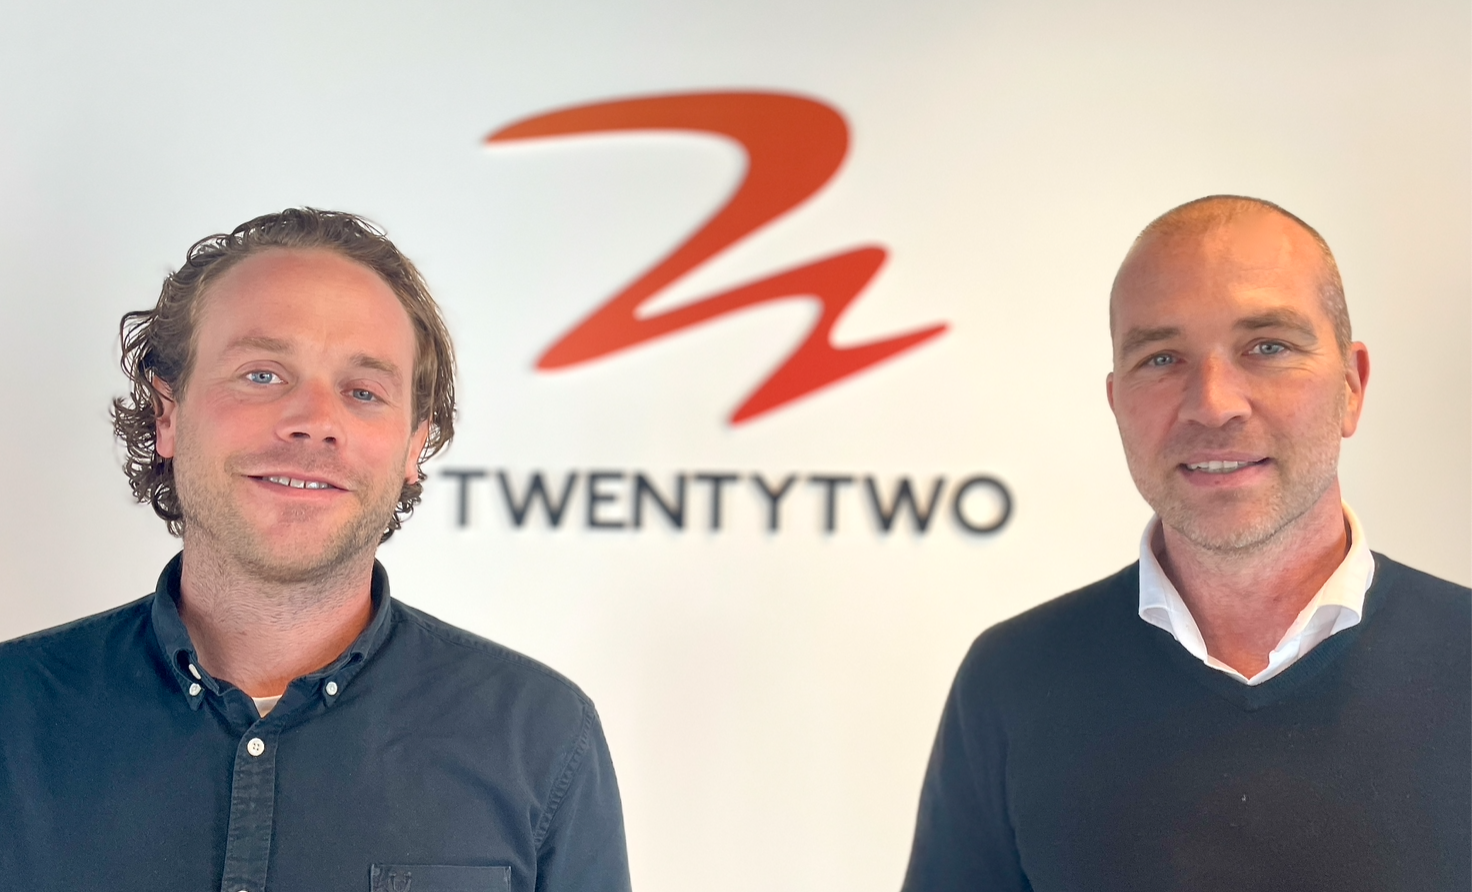 Paul van der Maesen en Jasper van der Schalie starten productiebedrijf Twentytwo